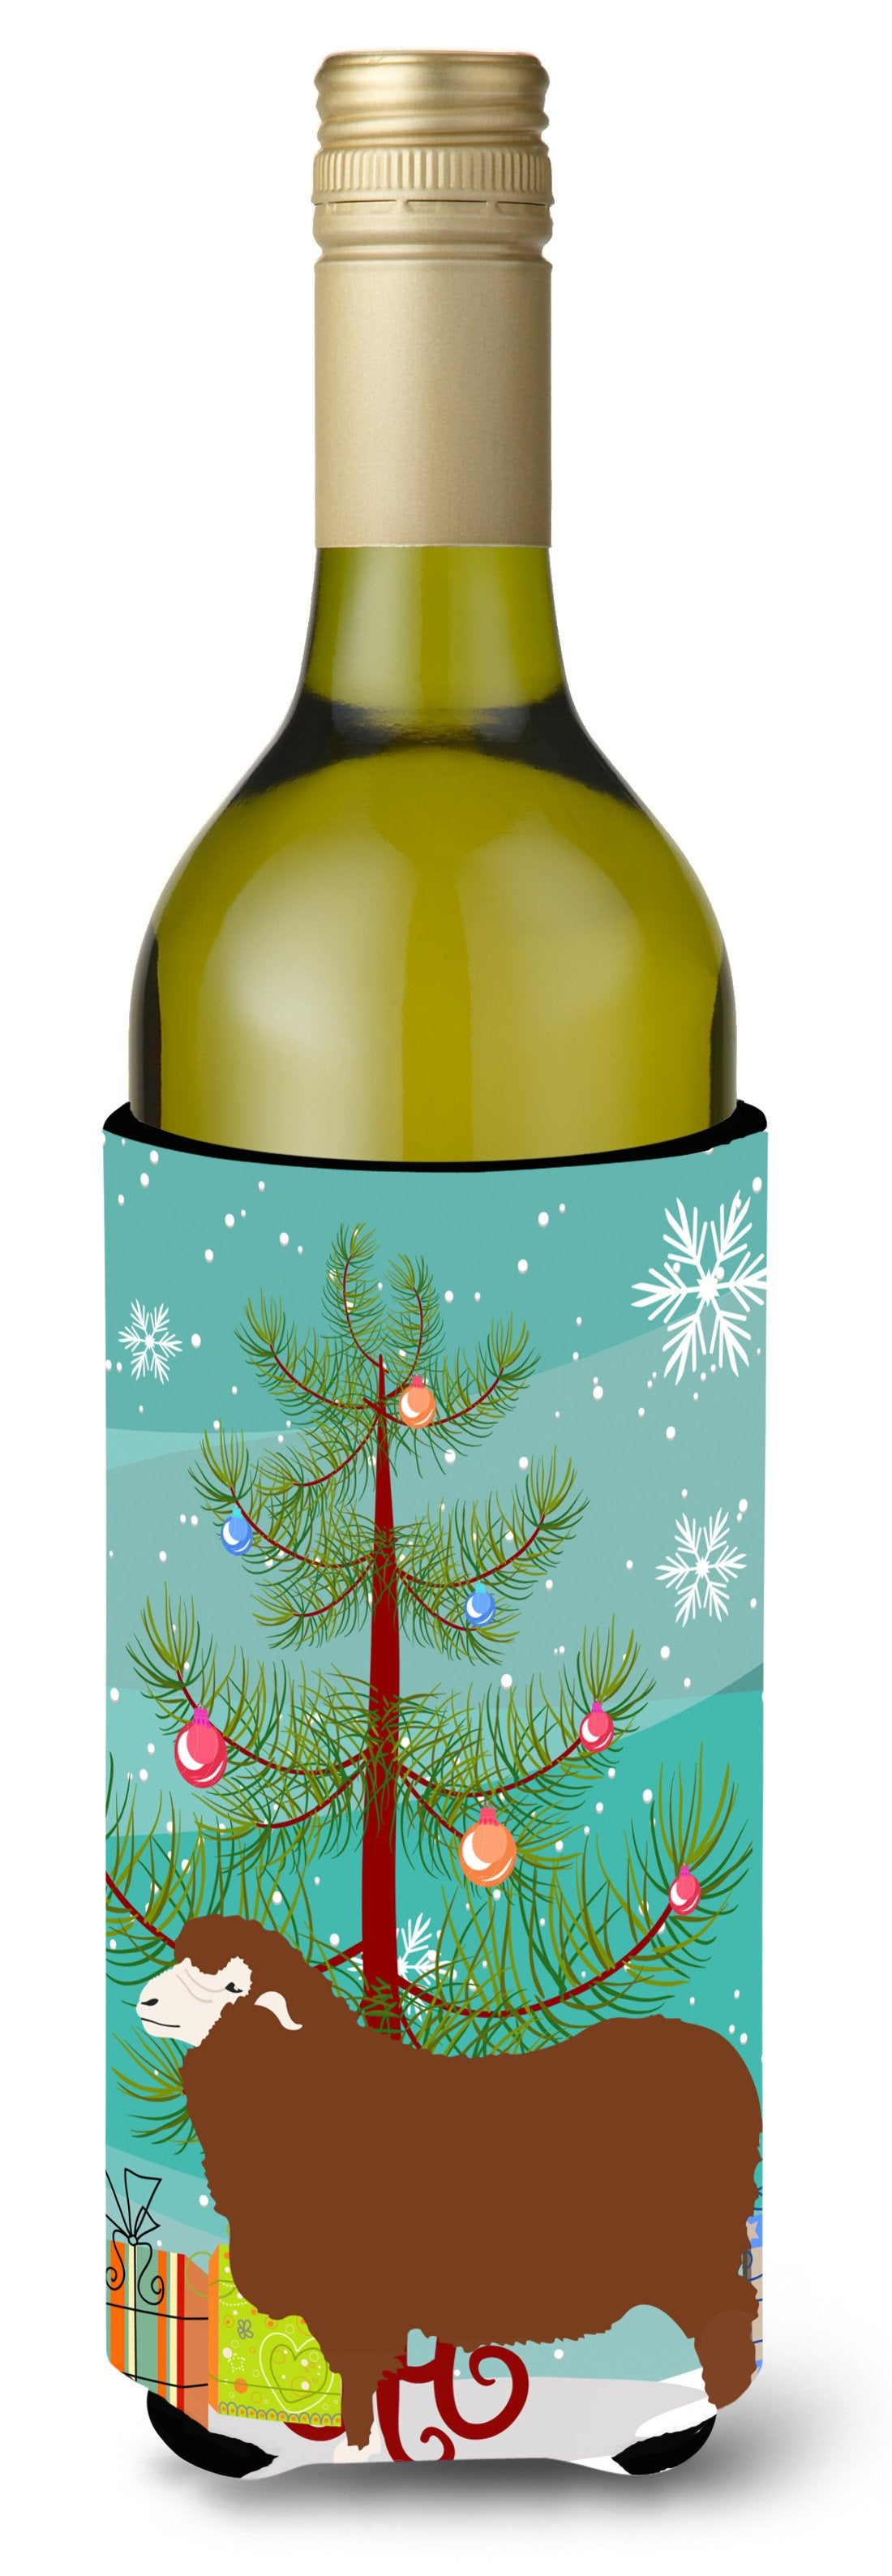 Merino Sheep Christmas Wine Bottle Beverge Insulator Hugger BB9348LITERK by Caroline's Treasures